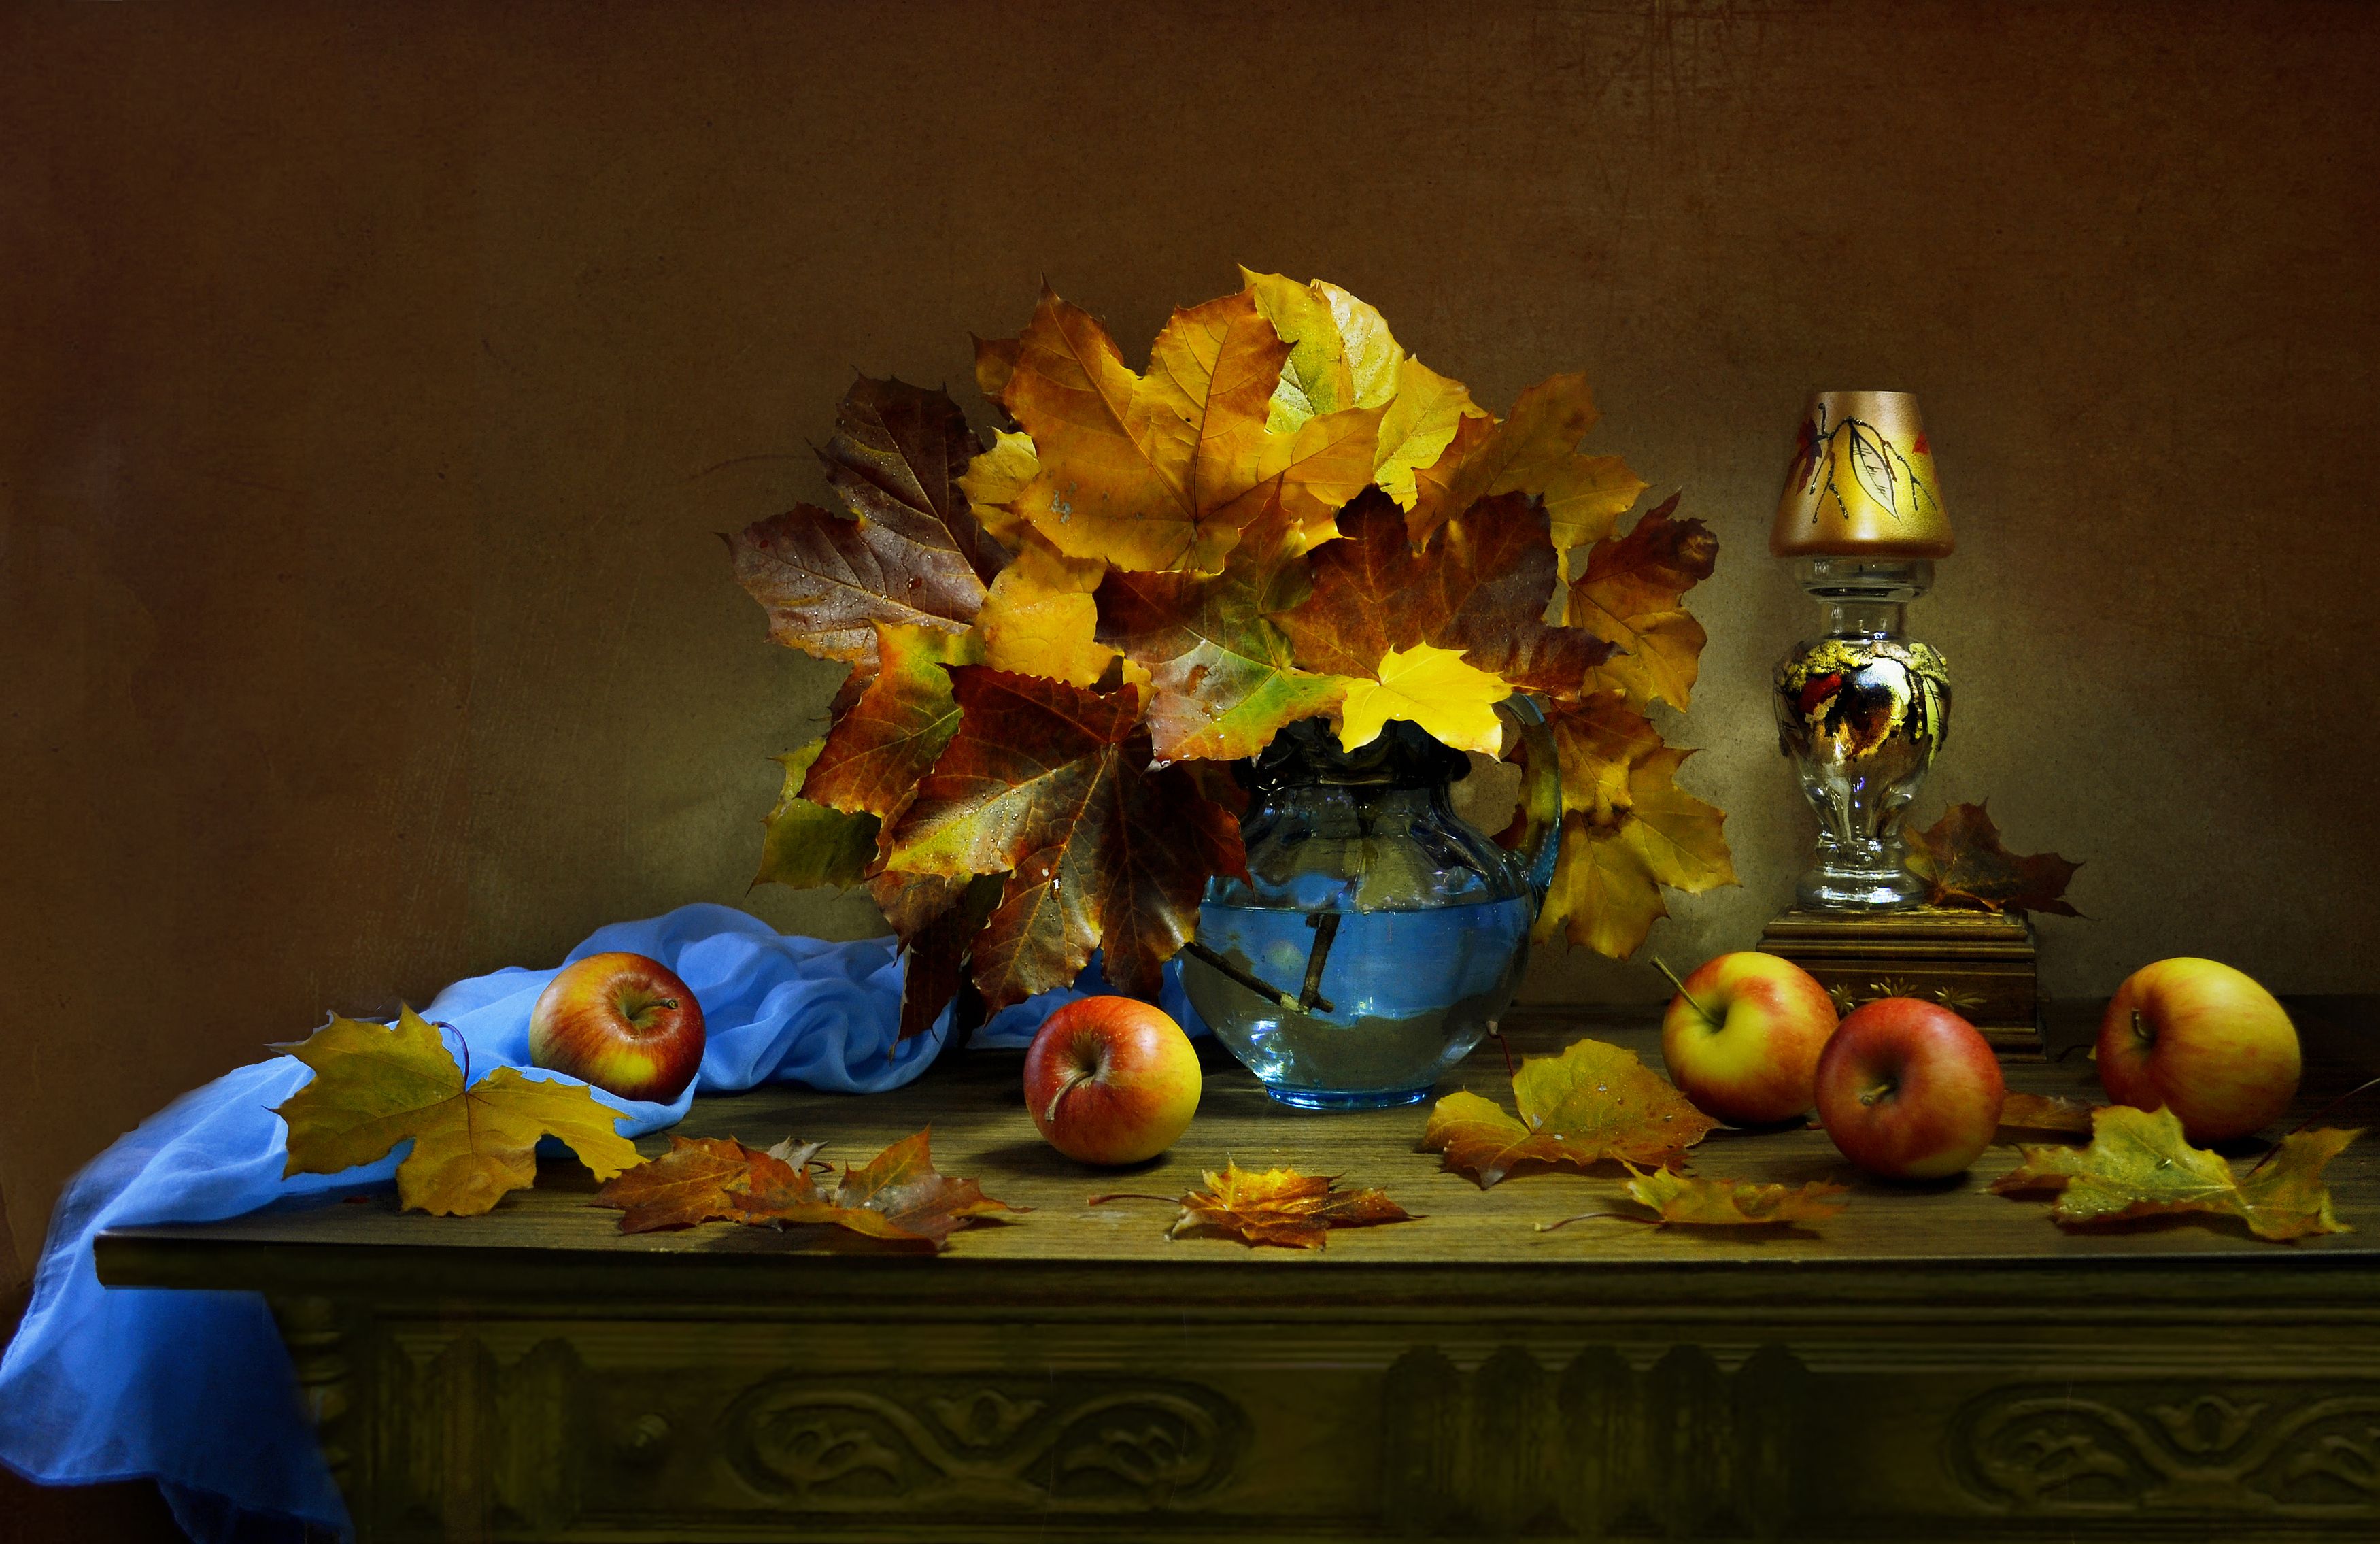 still life, натюрморт, цветы, фото натюрморт,  осень, октябрь, кленовые листья, подсвечник, яблоки, Колова Валентина